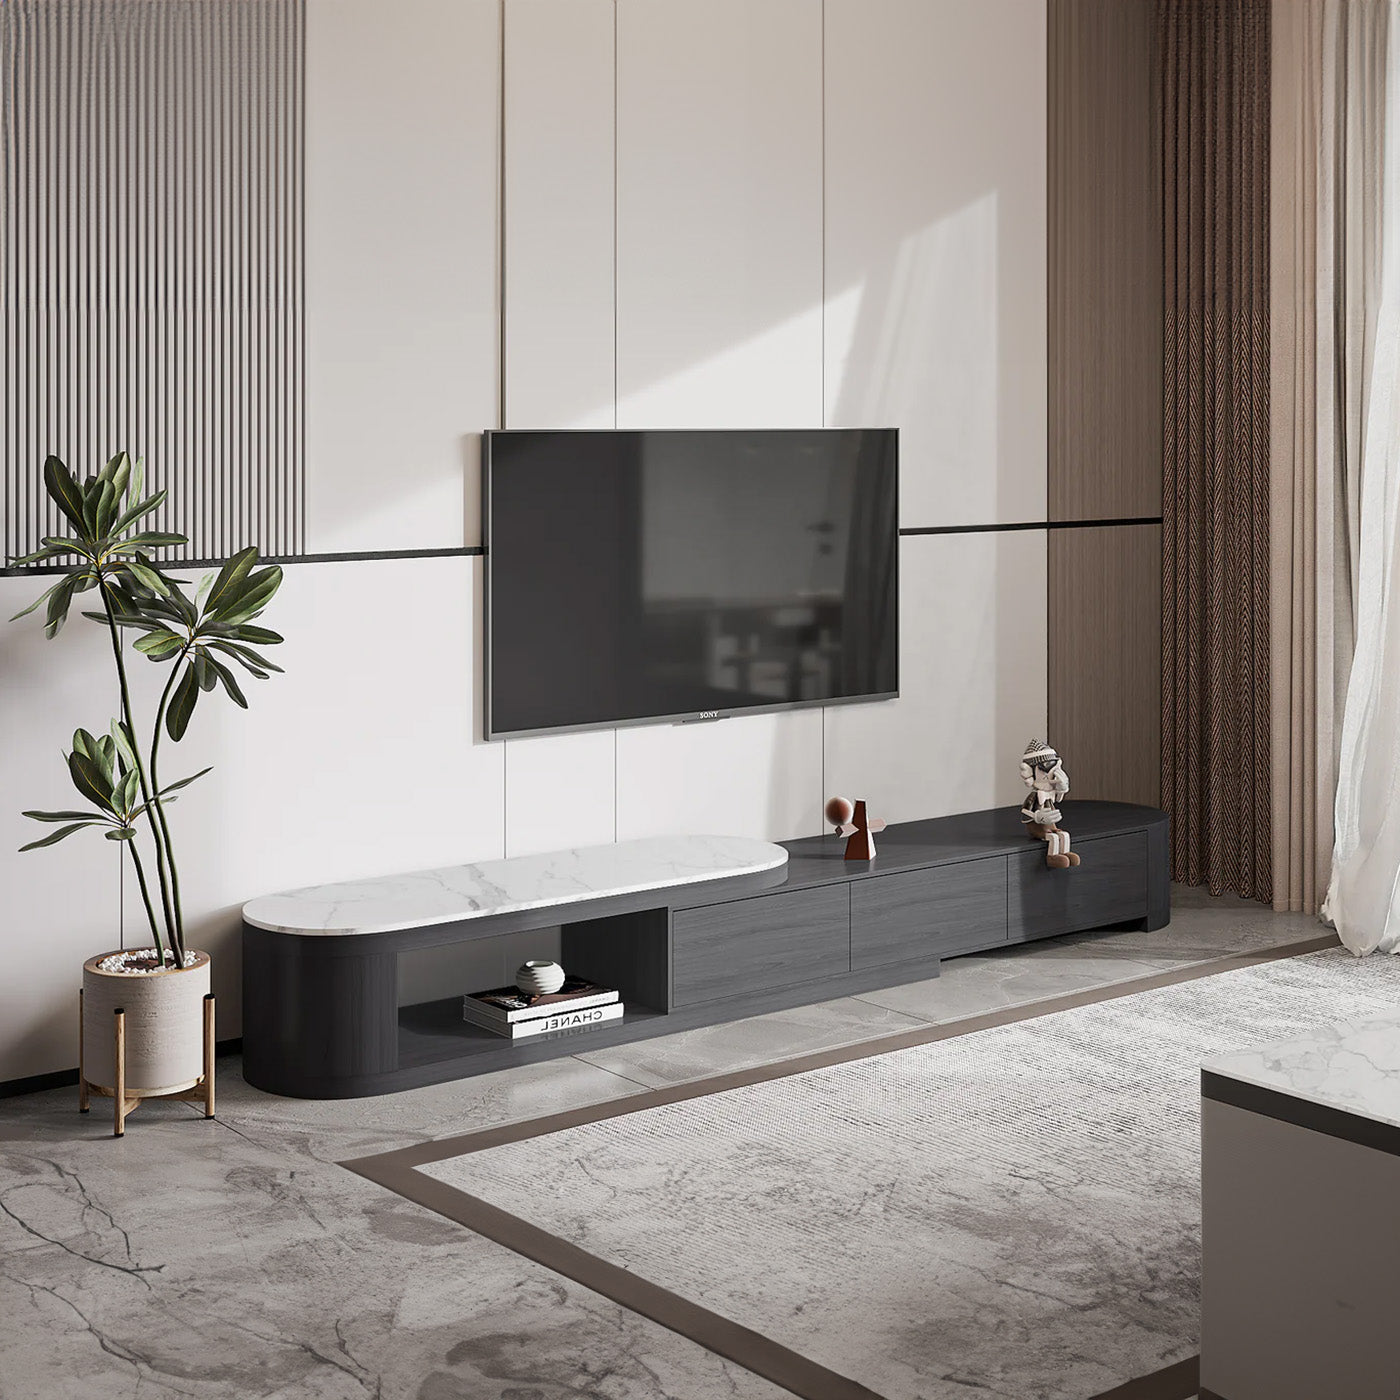 Bellemave 70.8" Black Color Modern Sintered Stone And Ash Wood TV Cabinet